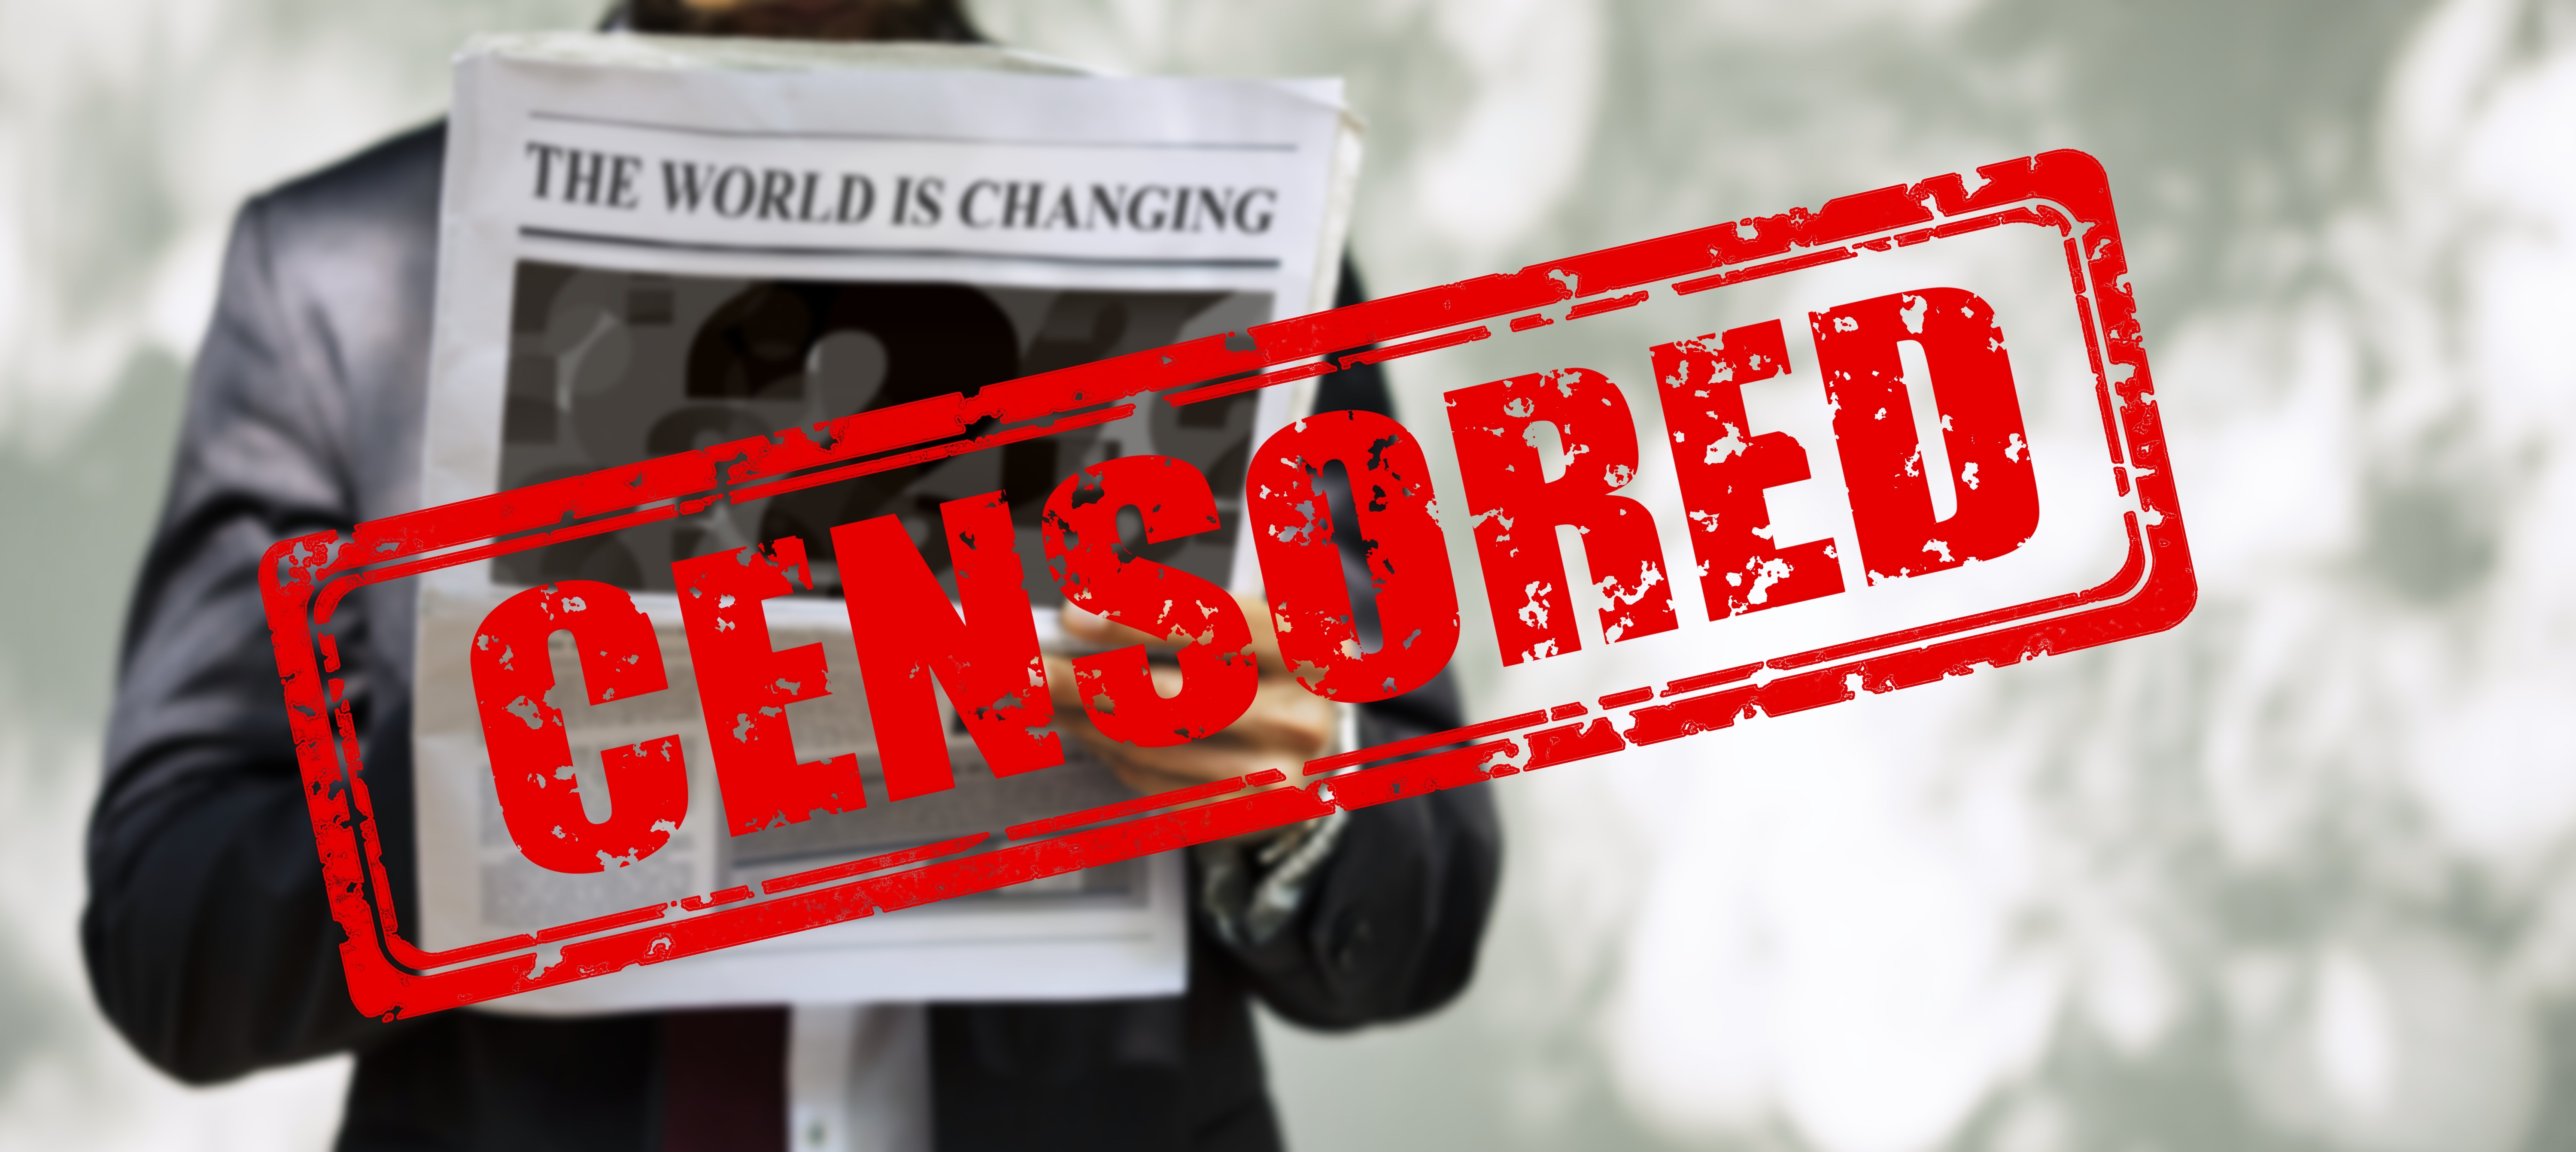 Zensur: Facebook ist der König, die anderen ziehen nach